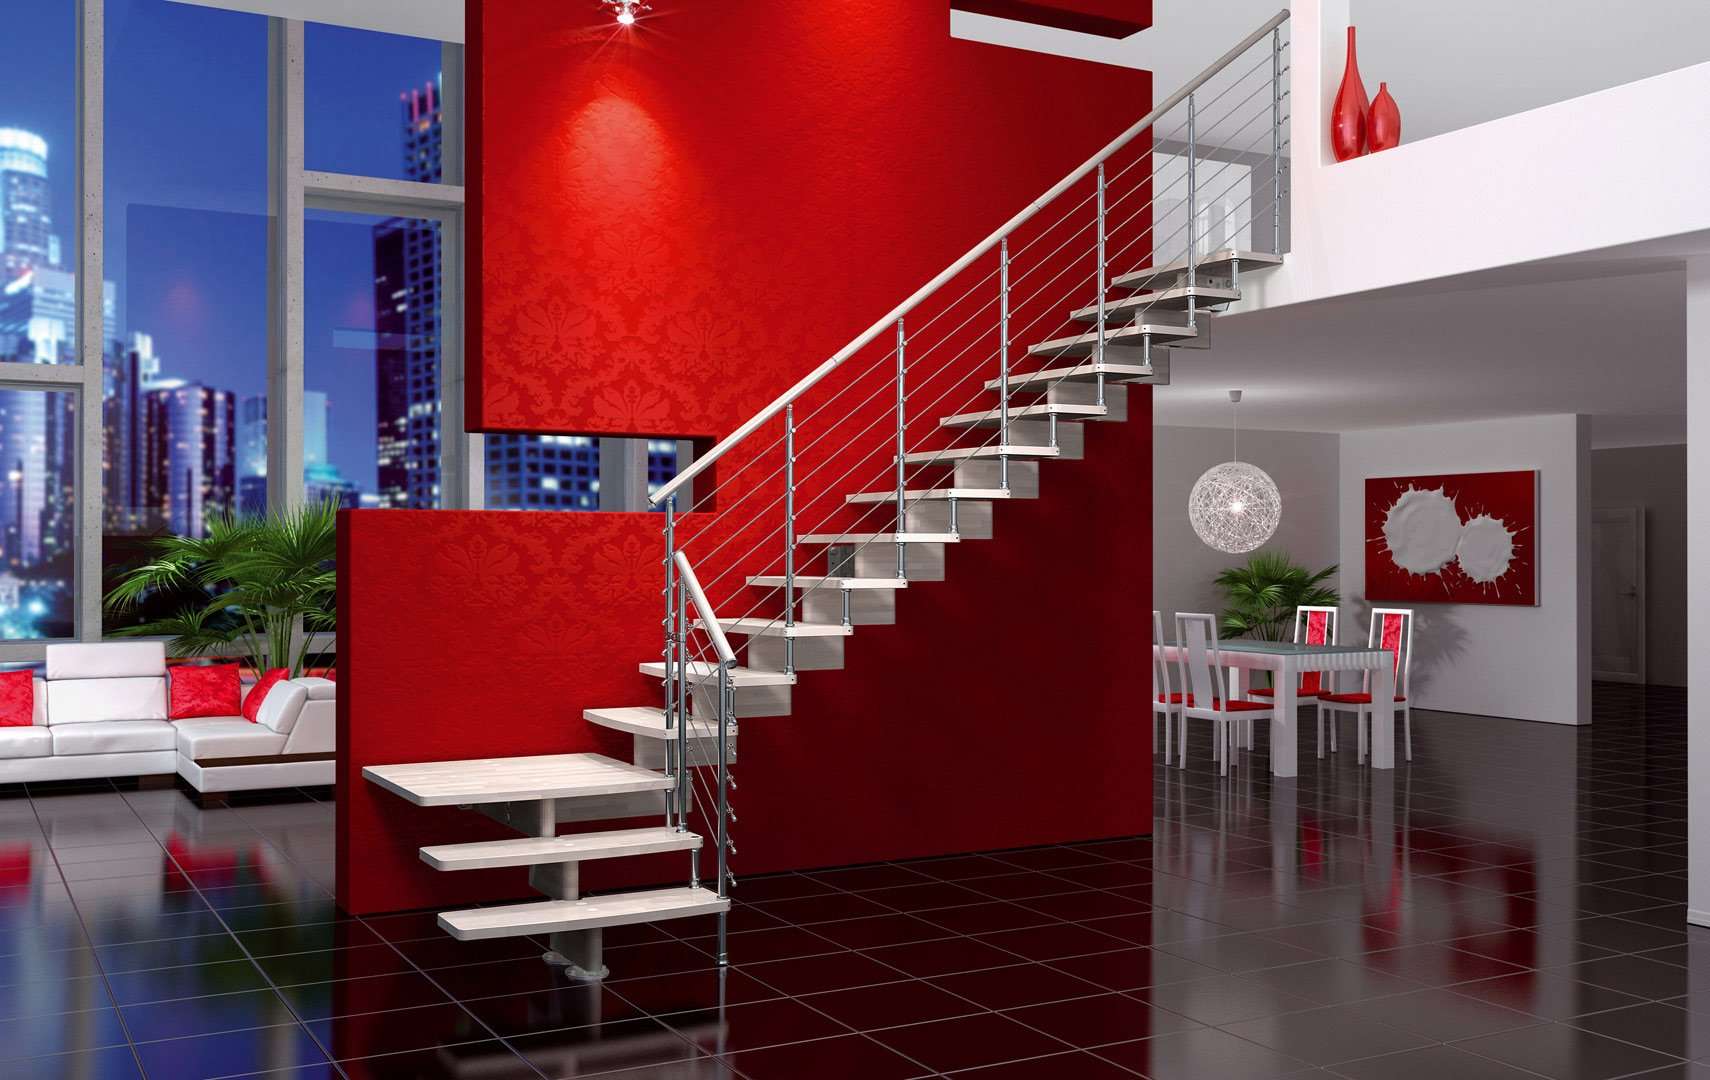 Nuvola, Открытая конструкция лестницы, лестница дизайн